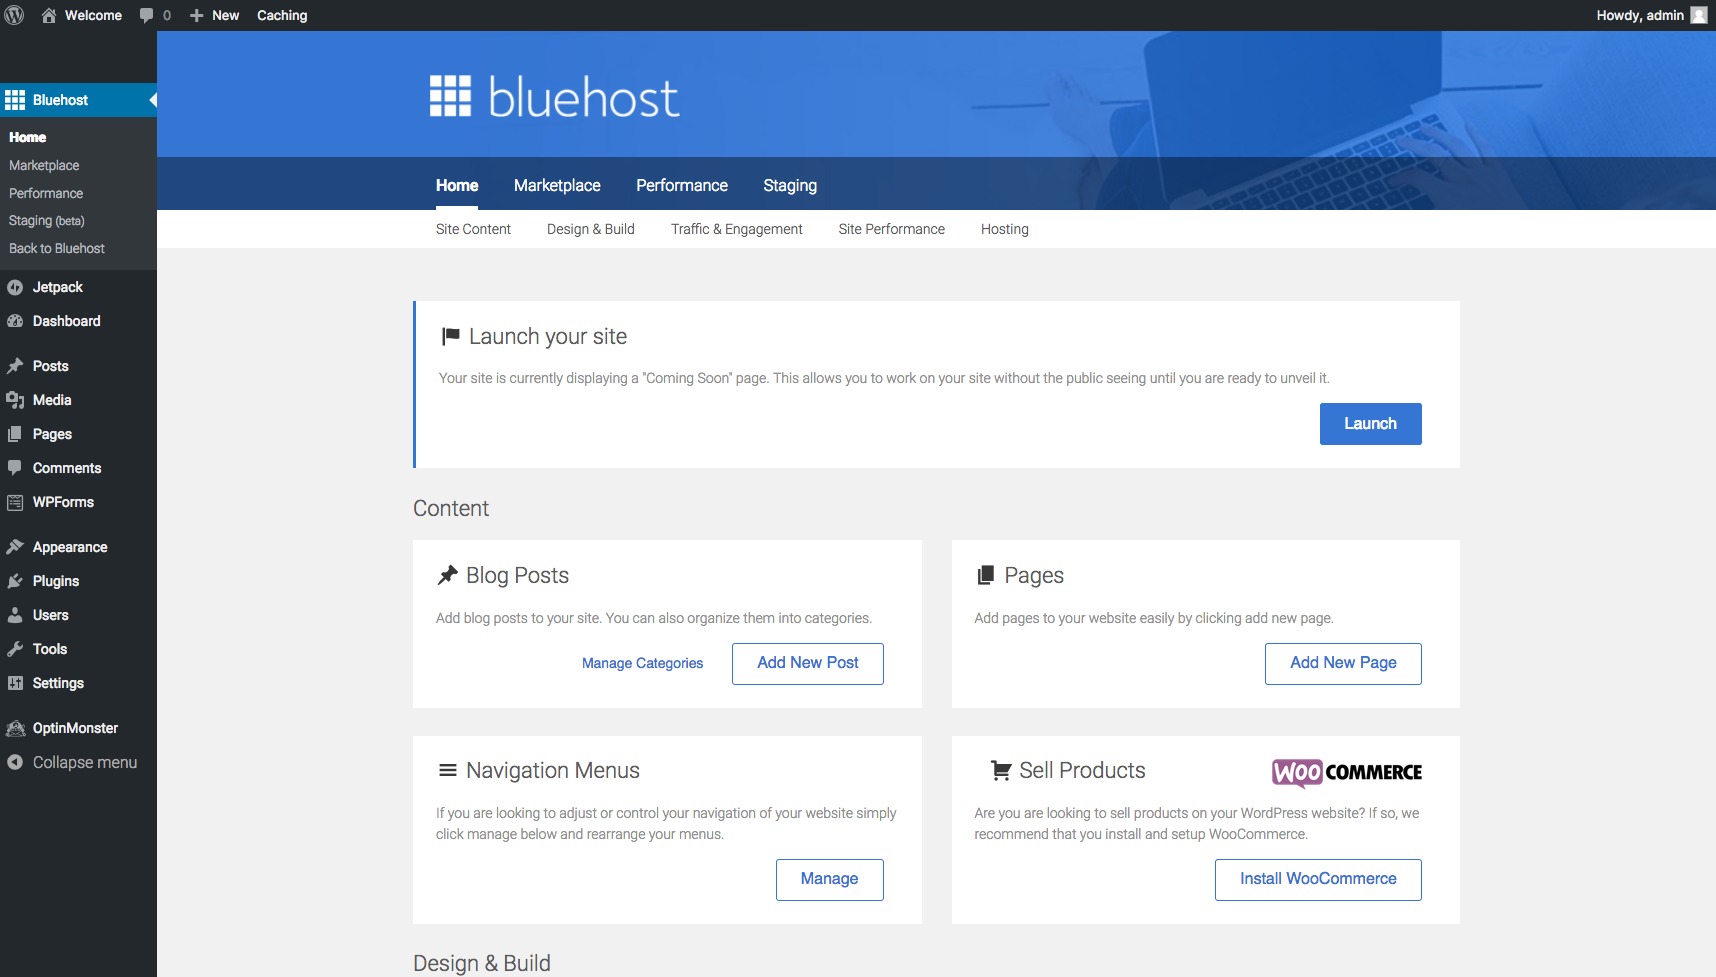 bluehost-dashboard 